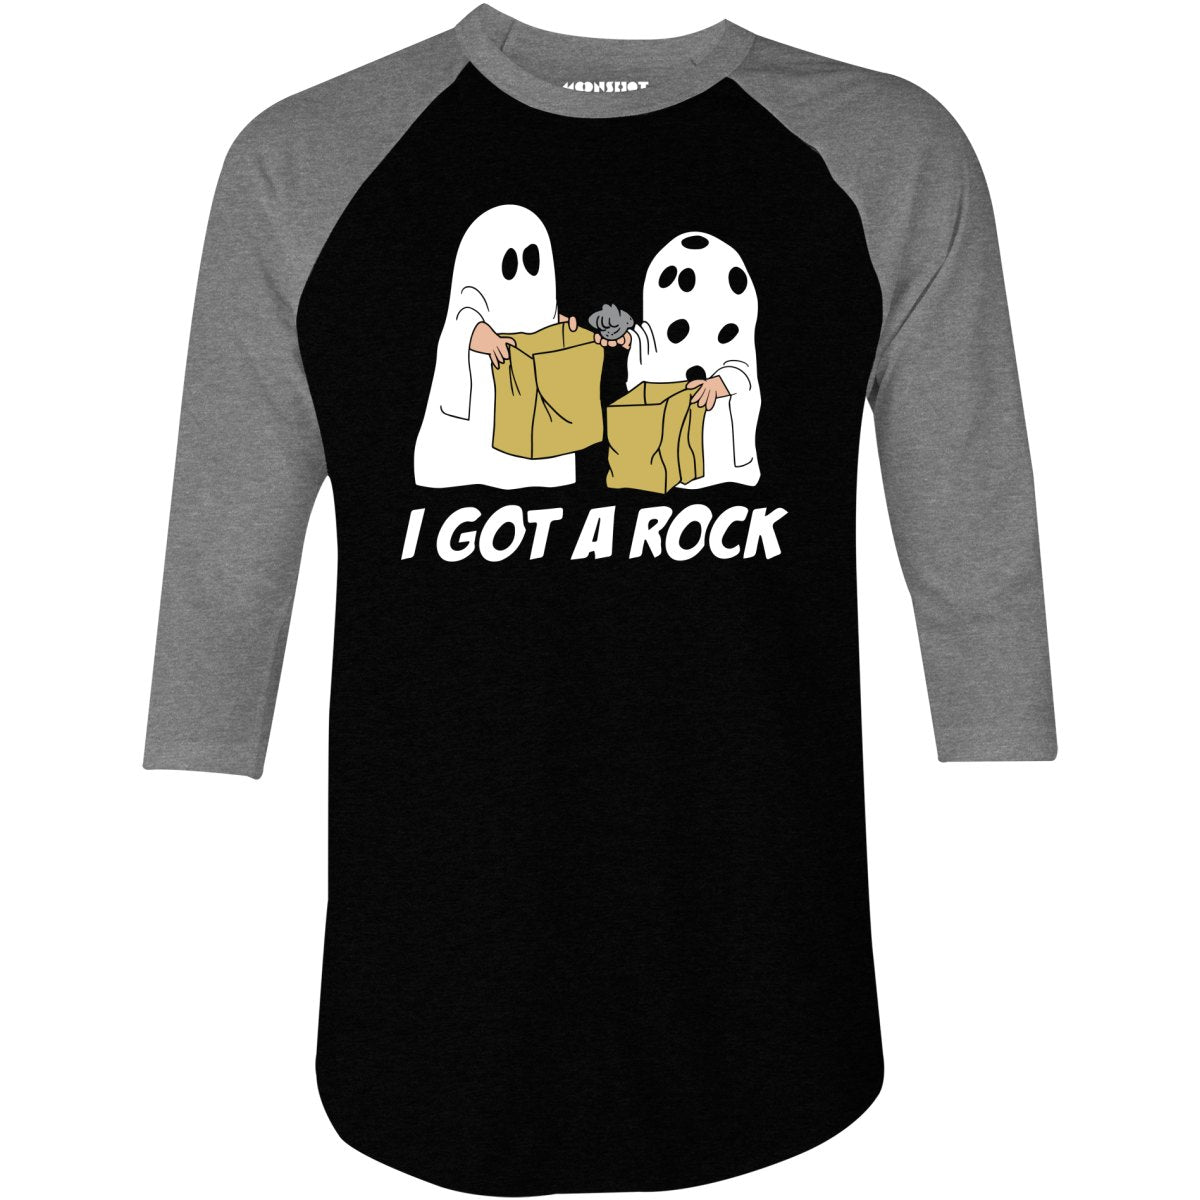 I Got a Rock - 3/4 Sleeve Raglan T-Shirt